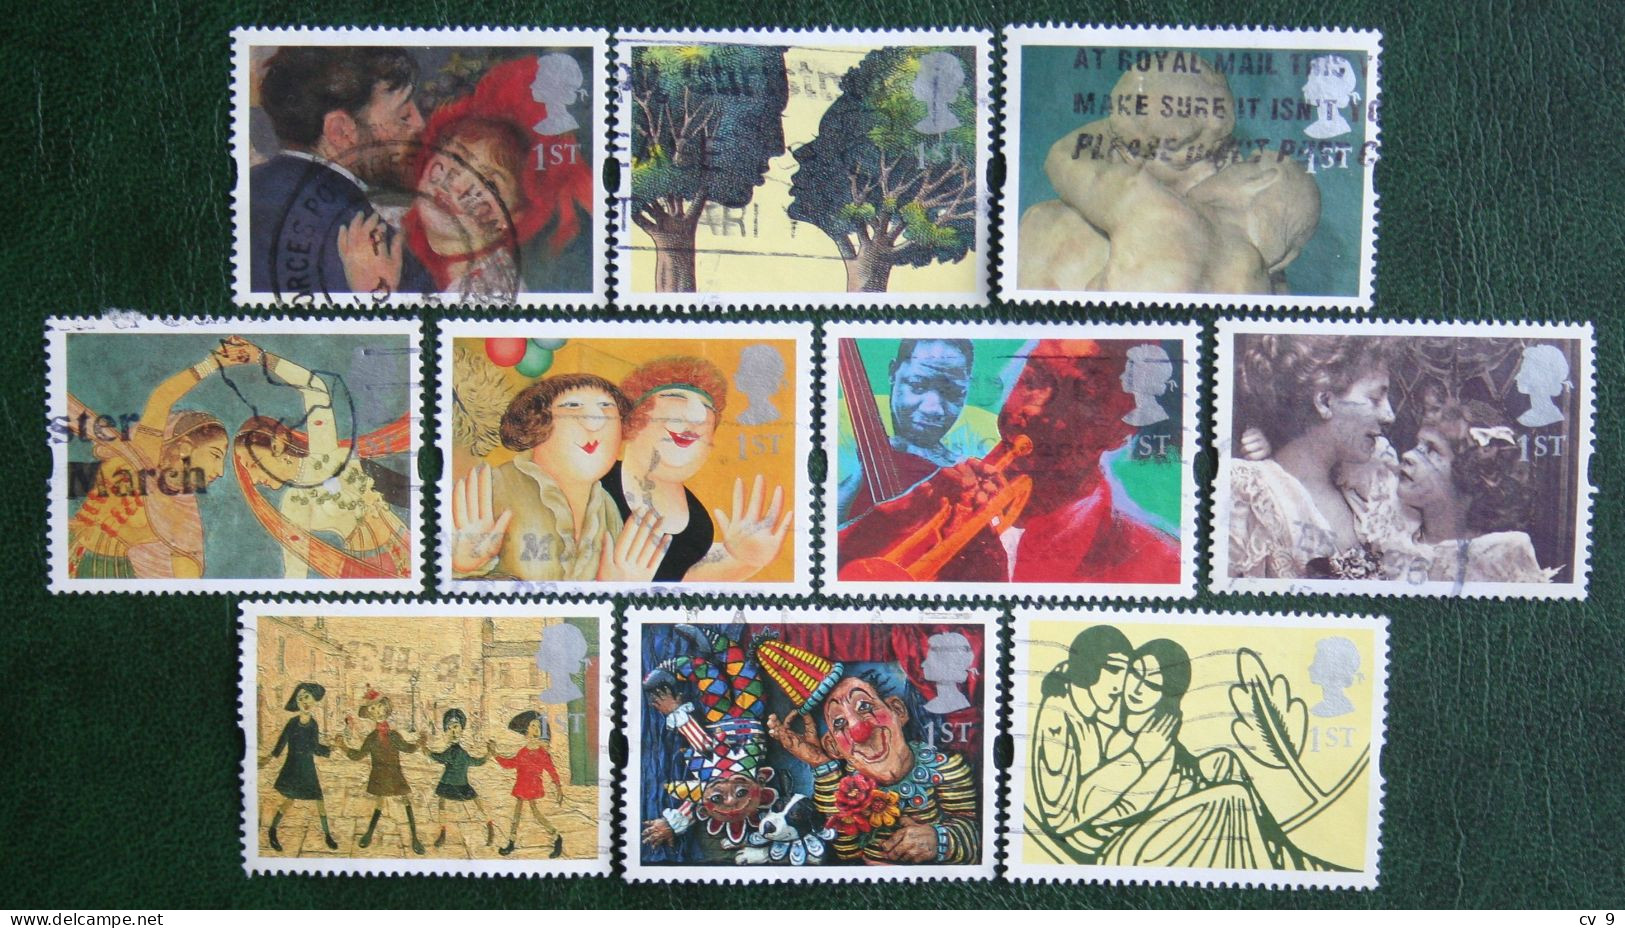 GREETINGS IN ART STAMPS Clown Music (Mi 1554-1563) 1995 Used Gebruikt Oblitere ENGLAND GRANDE-BRETAGNE GB GREAT BRITAIN - Used Stamps